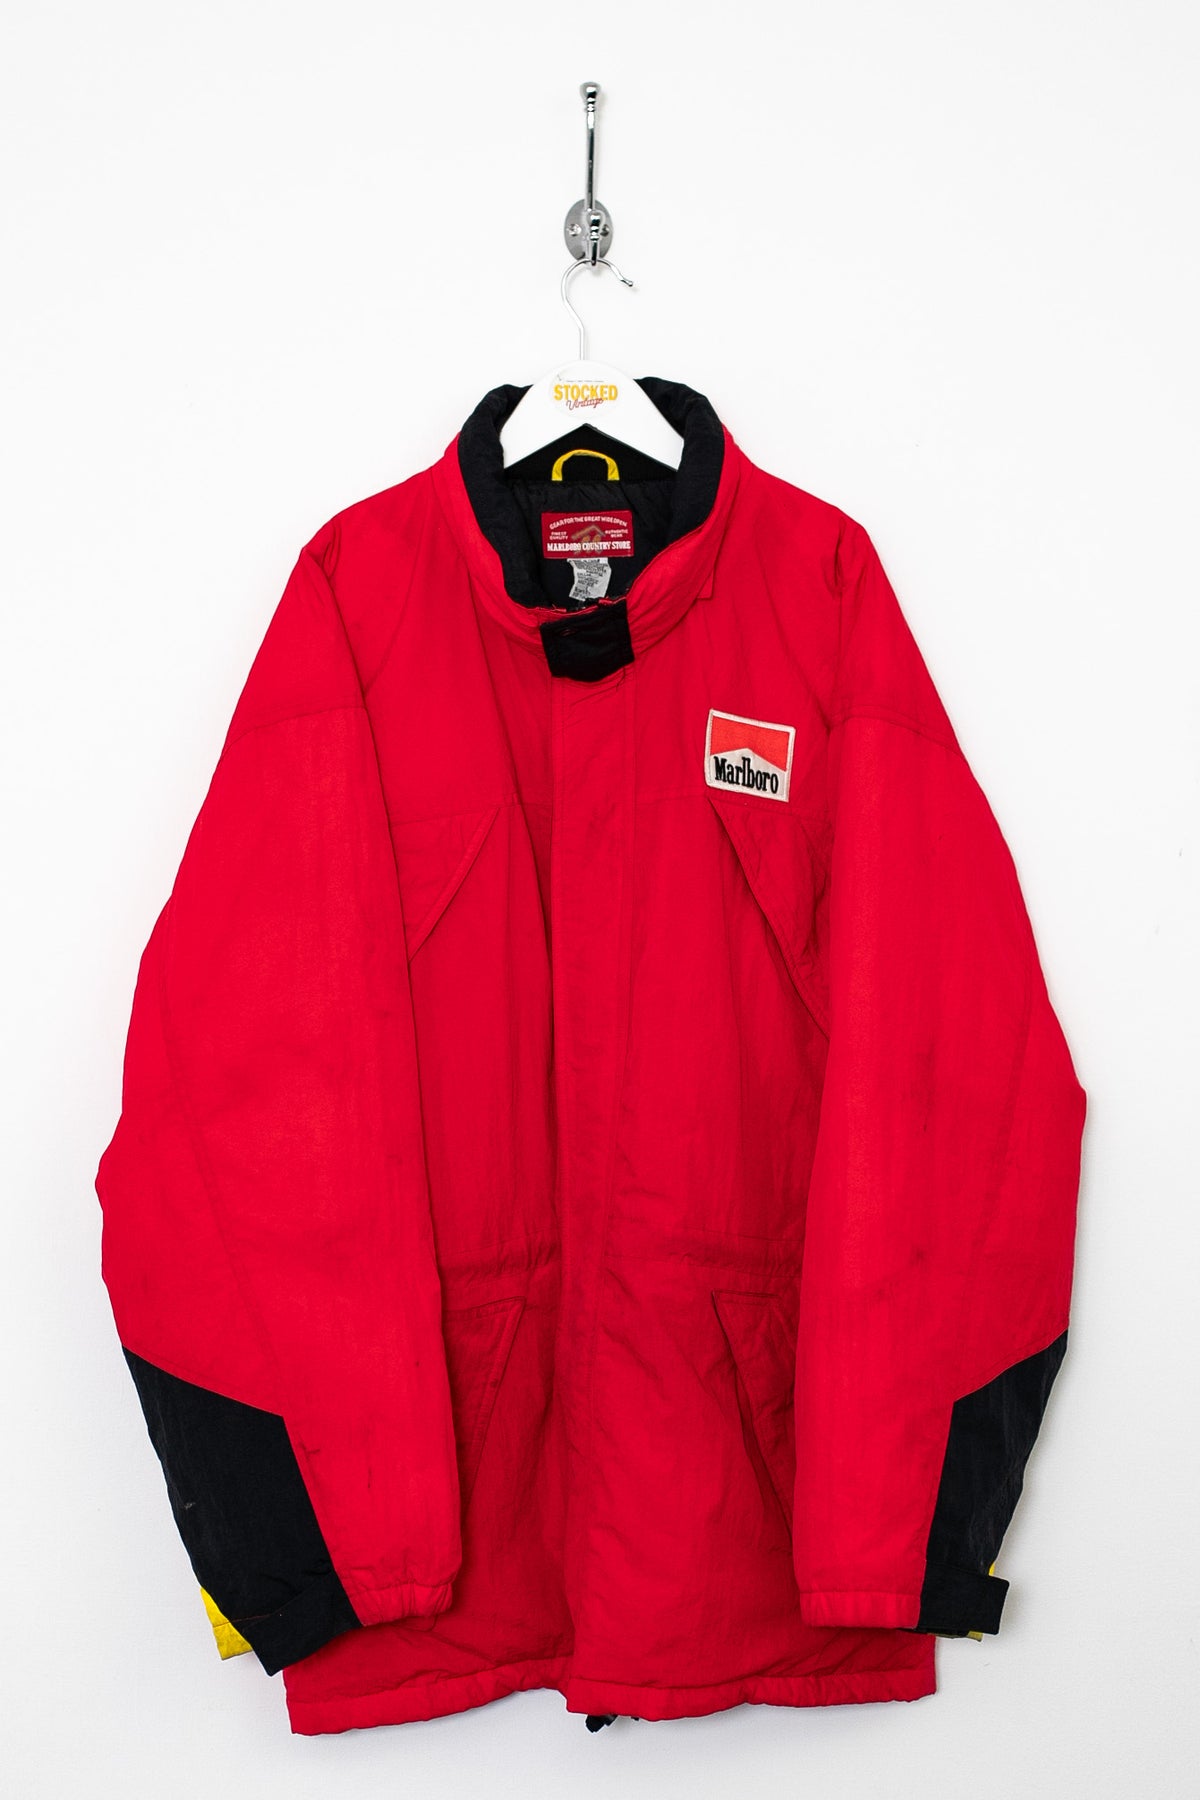 90s Marlboro Coat (XL)